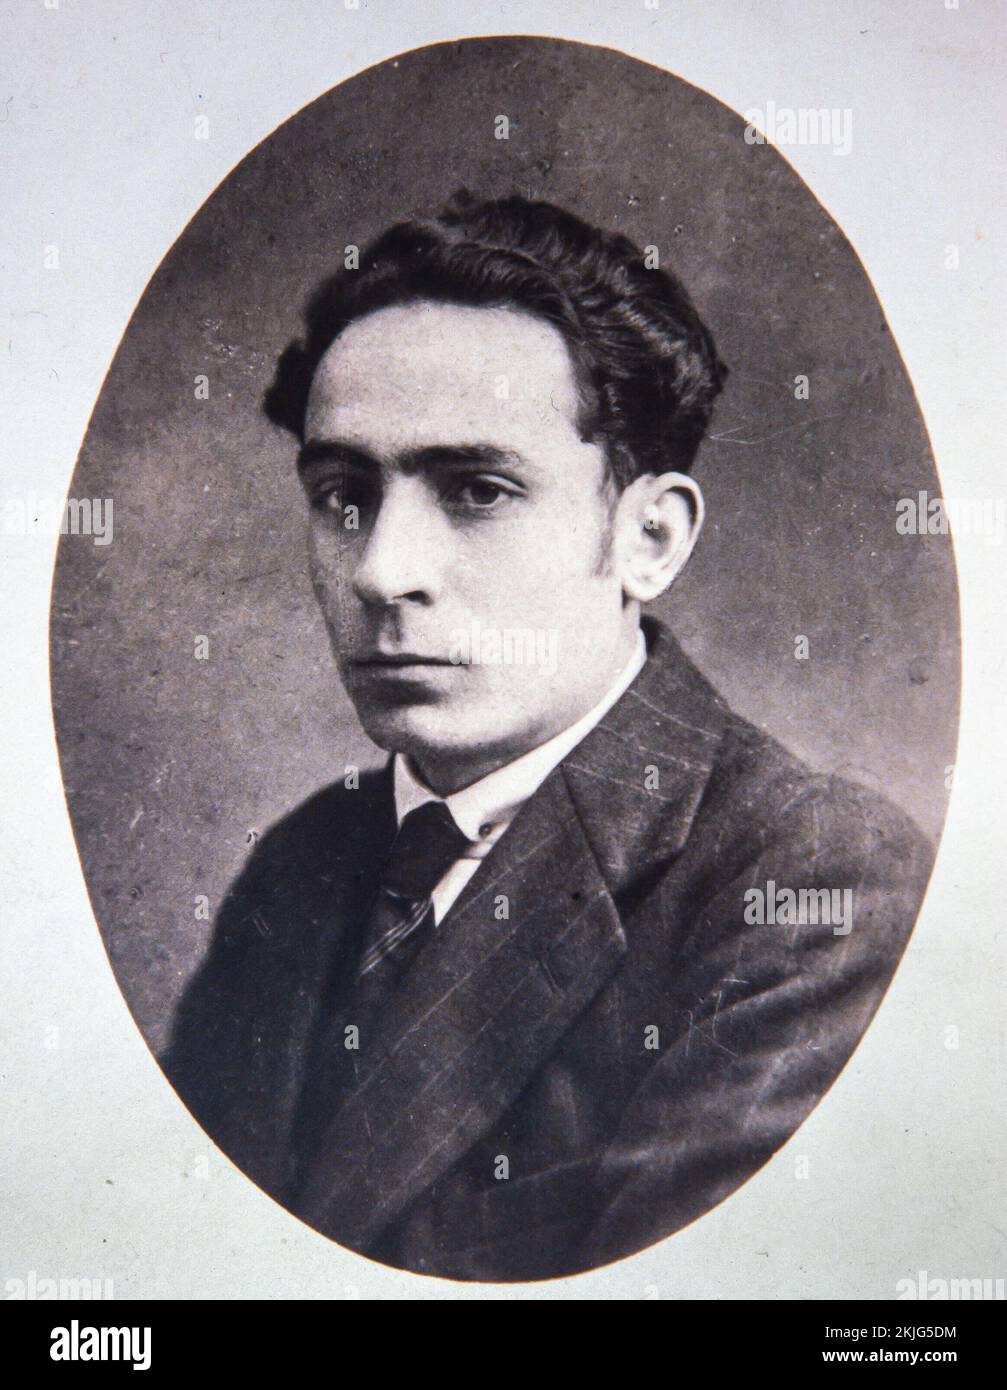 Joan Salvat-Papasseit (Barcelona, 16 de mayo de 1894-7 de agosto de 1924) poeta, máximo representante del futurismo en la literatura en lengua catalana. Conocido como poeta de vanguardia. Stock Photo